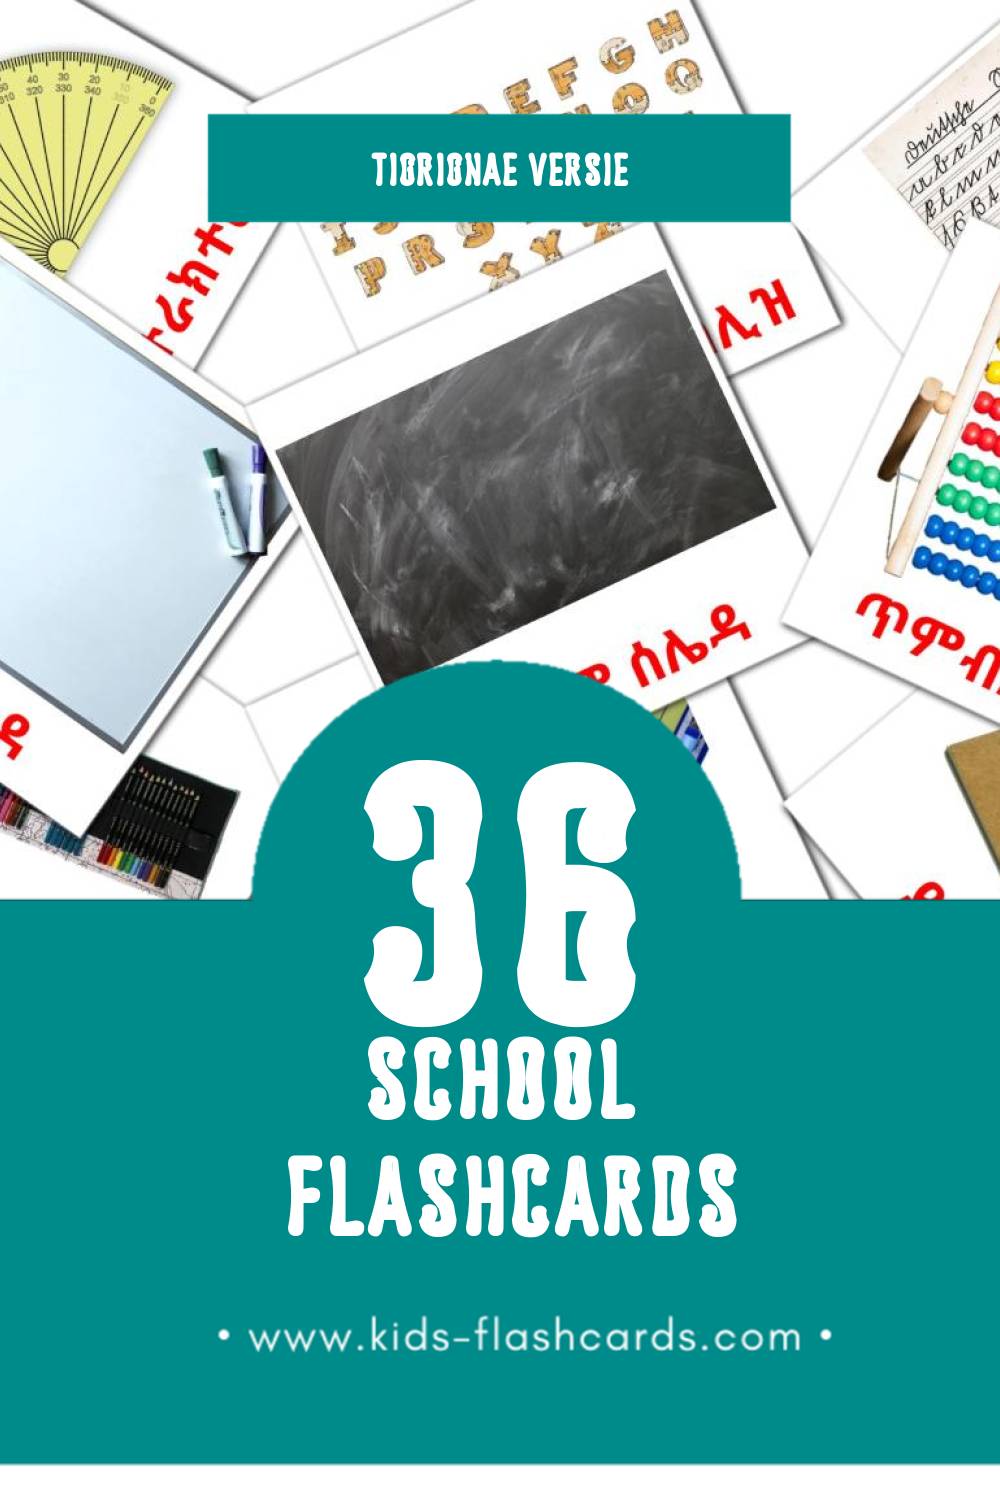 Visuele ቤት ትምህርቲ Flashcards voor Kleuters (36 kaarten in het Tigrigna)